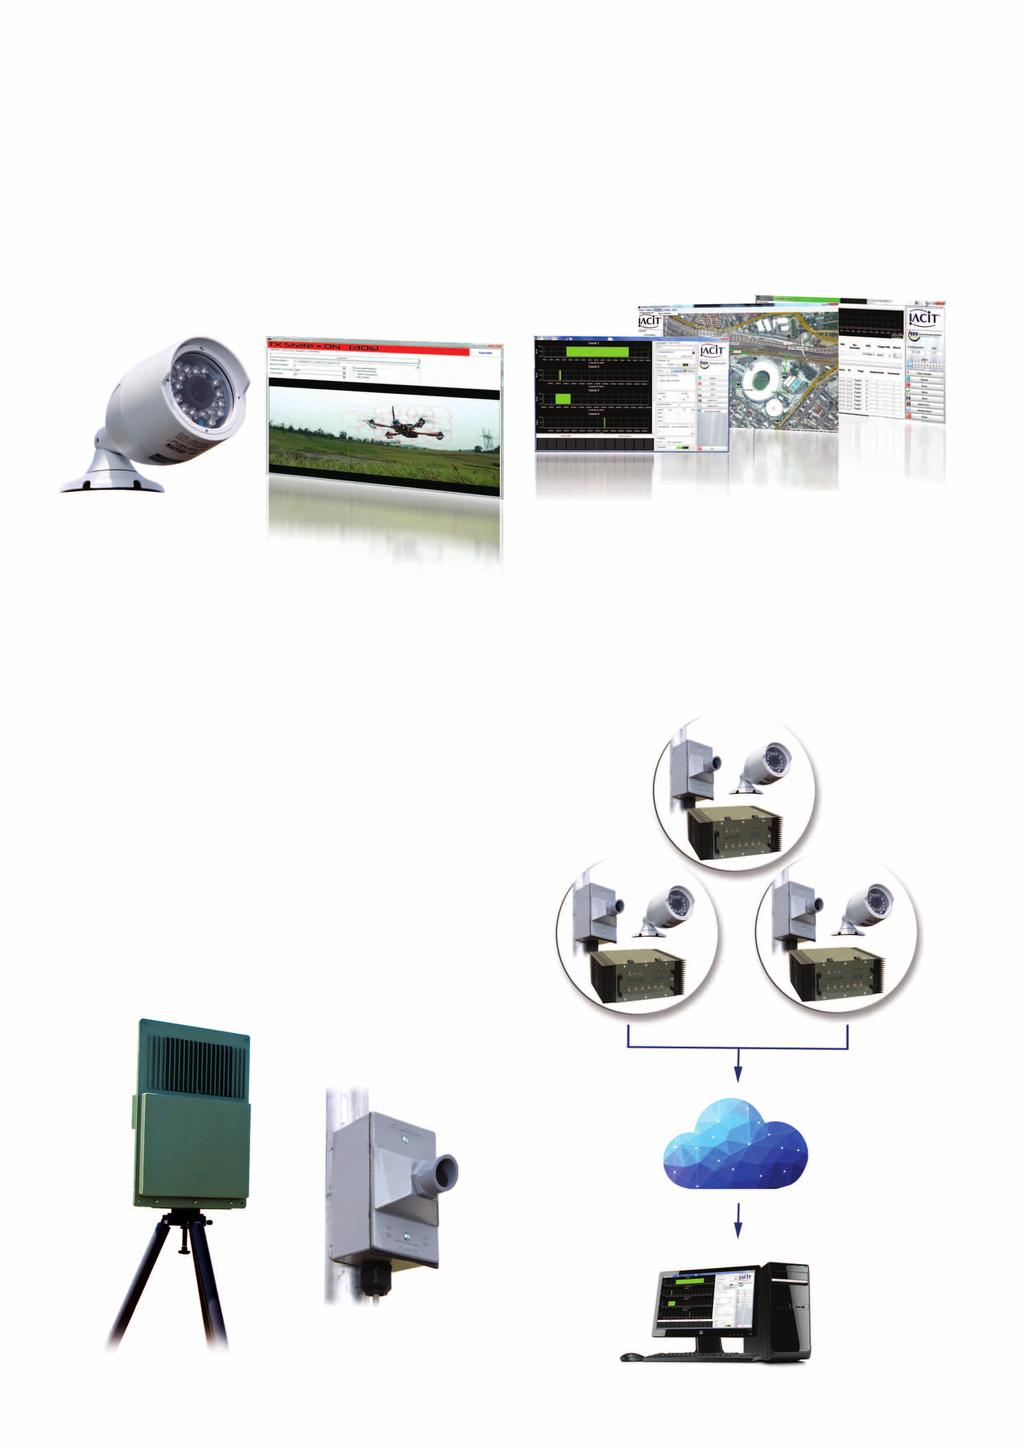 Cámaras de Vigilancia: IACIT desarrolló un algoritmo de procesamiento de imagen para detectar blancos (Drones), a través de los videos de cámaras de vigilancia del perímetro.